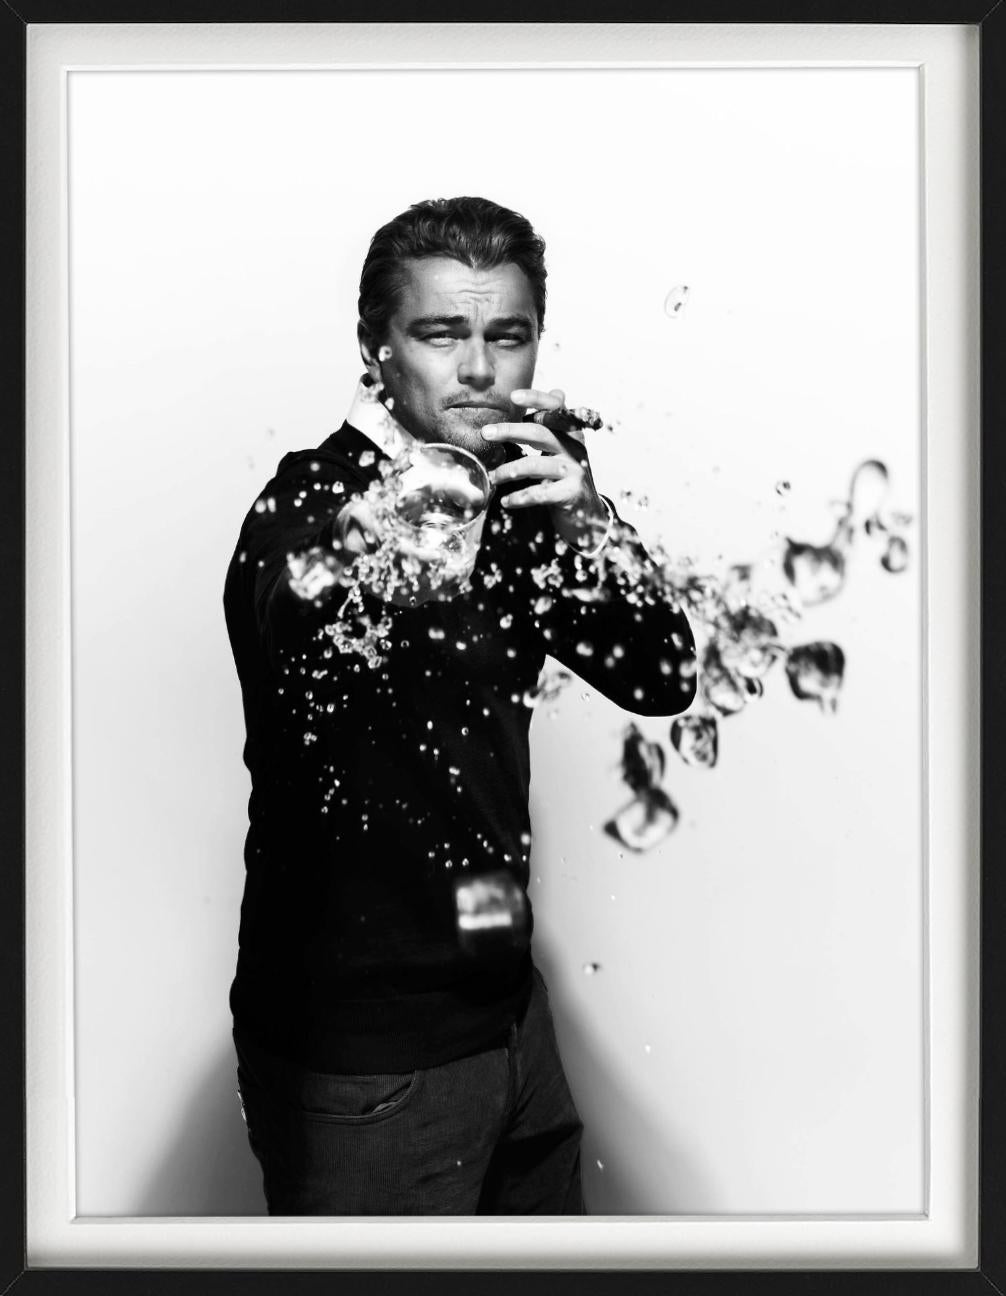 Leonardo DiCaprio-Trümmern – Porträt, das Trinken von Trinkgläsern, Kunstfotografie, 2010 (Zeitgenössisch), Photograph, von Nigel Parry